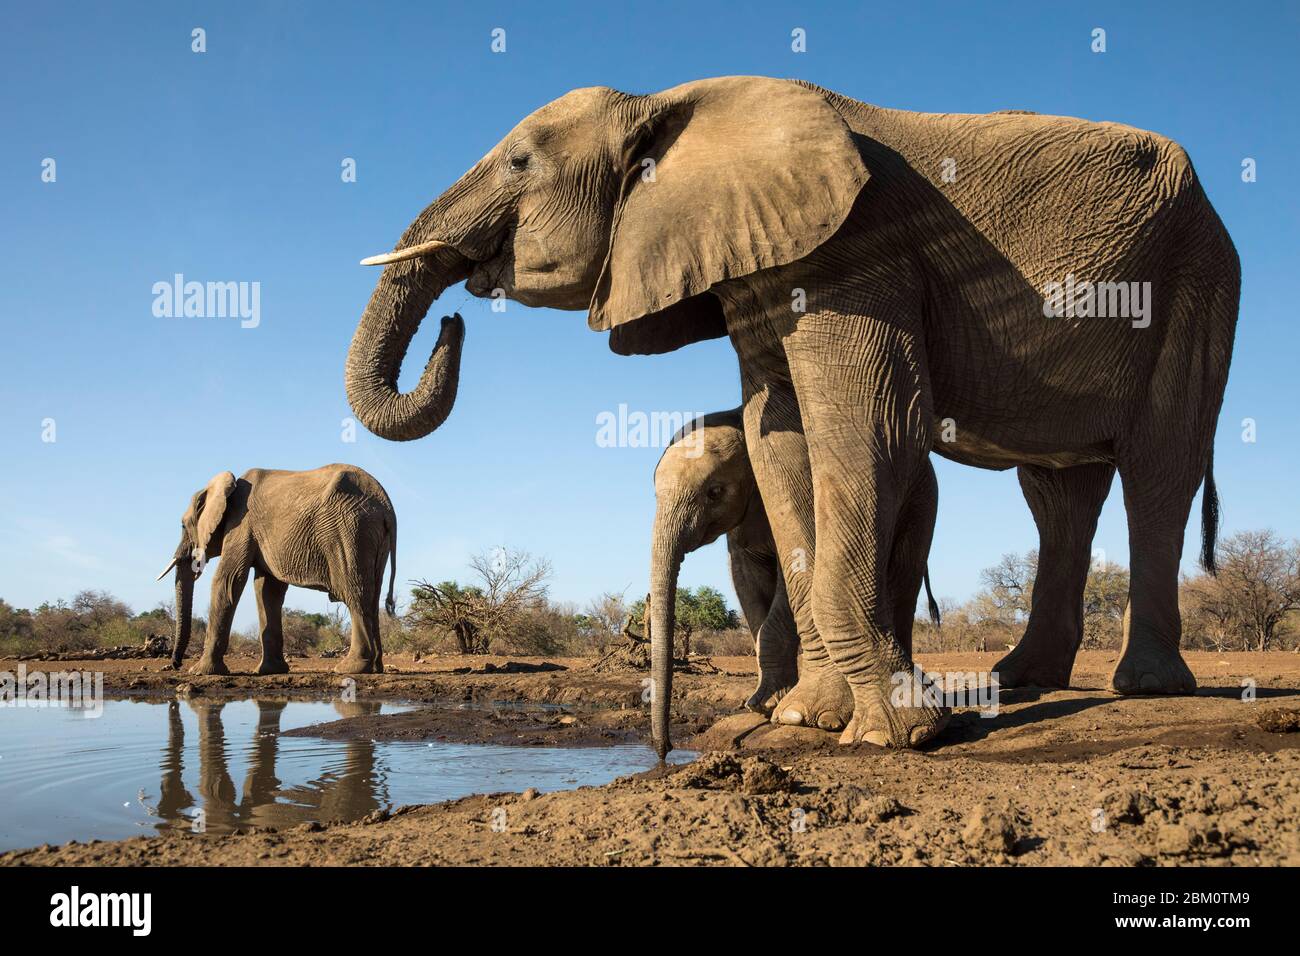 Elephants (Loxodonta africana) at water, Mashatu game reserve, Botswana Stock Photo